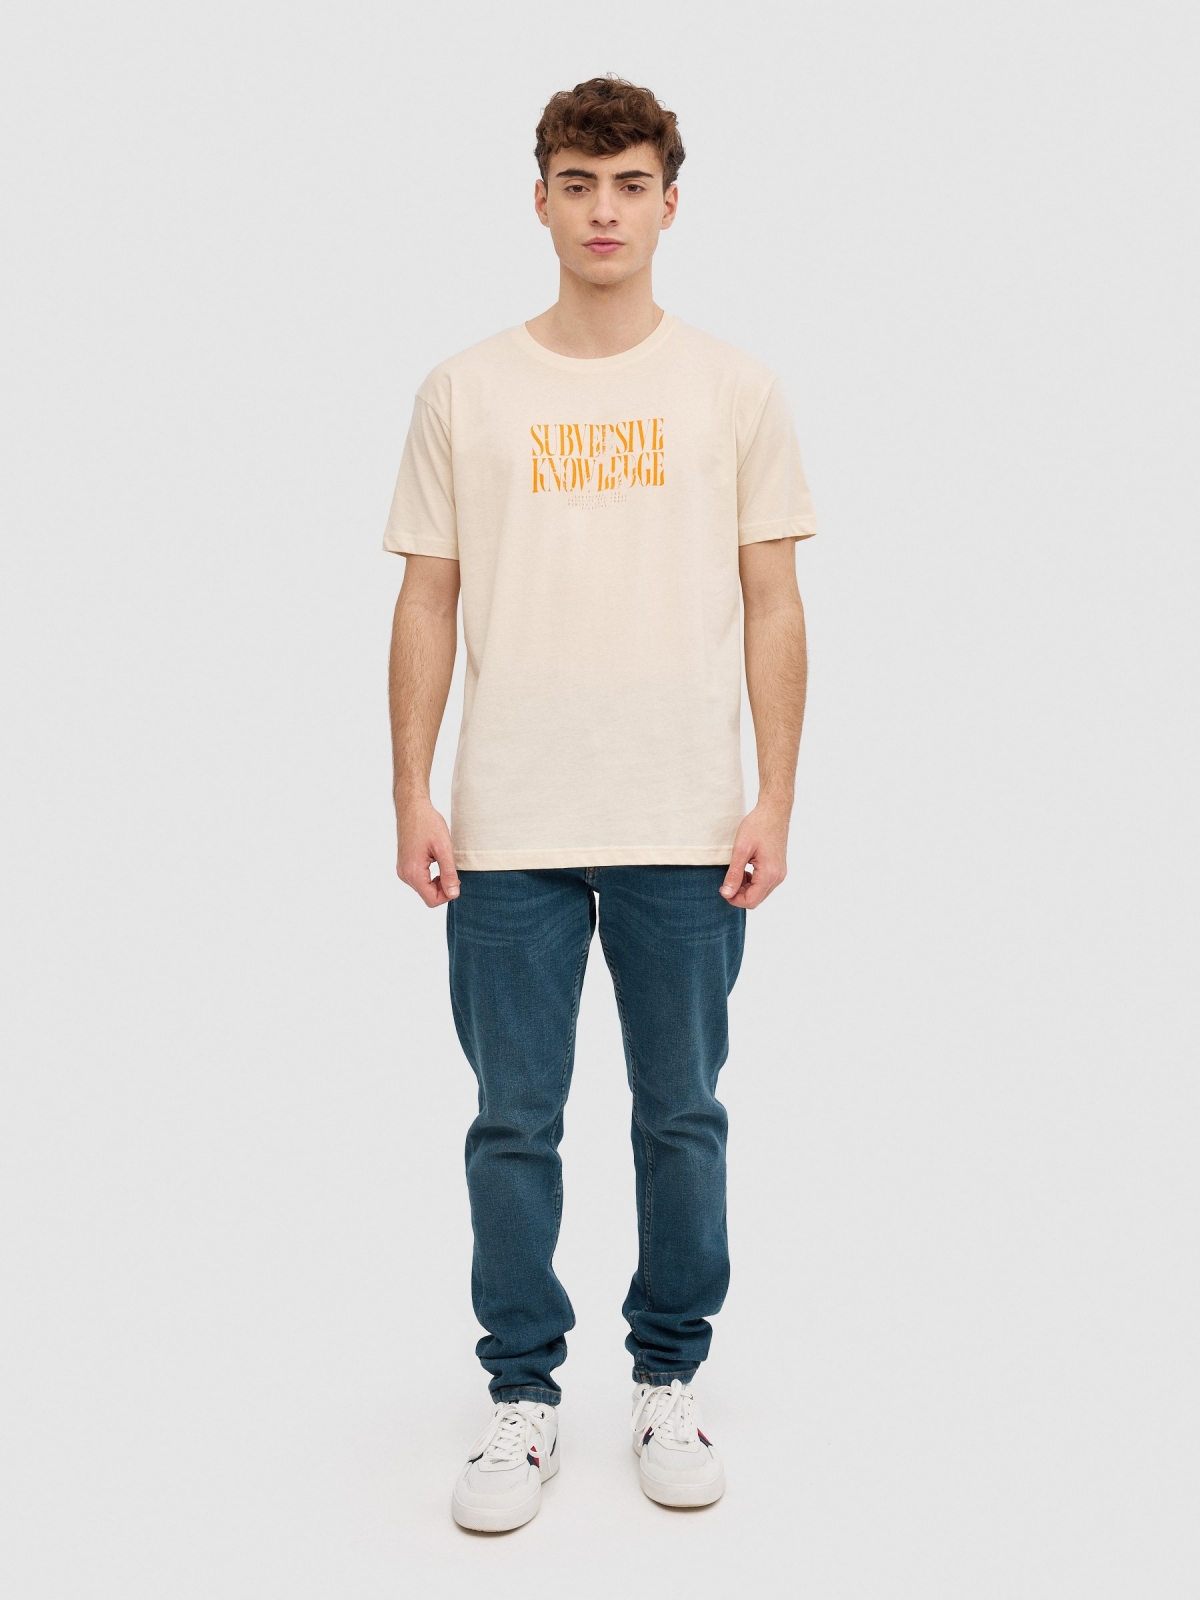 Camiseta texto minimalista arena vista general frontal